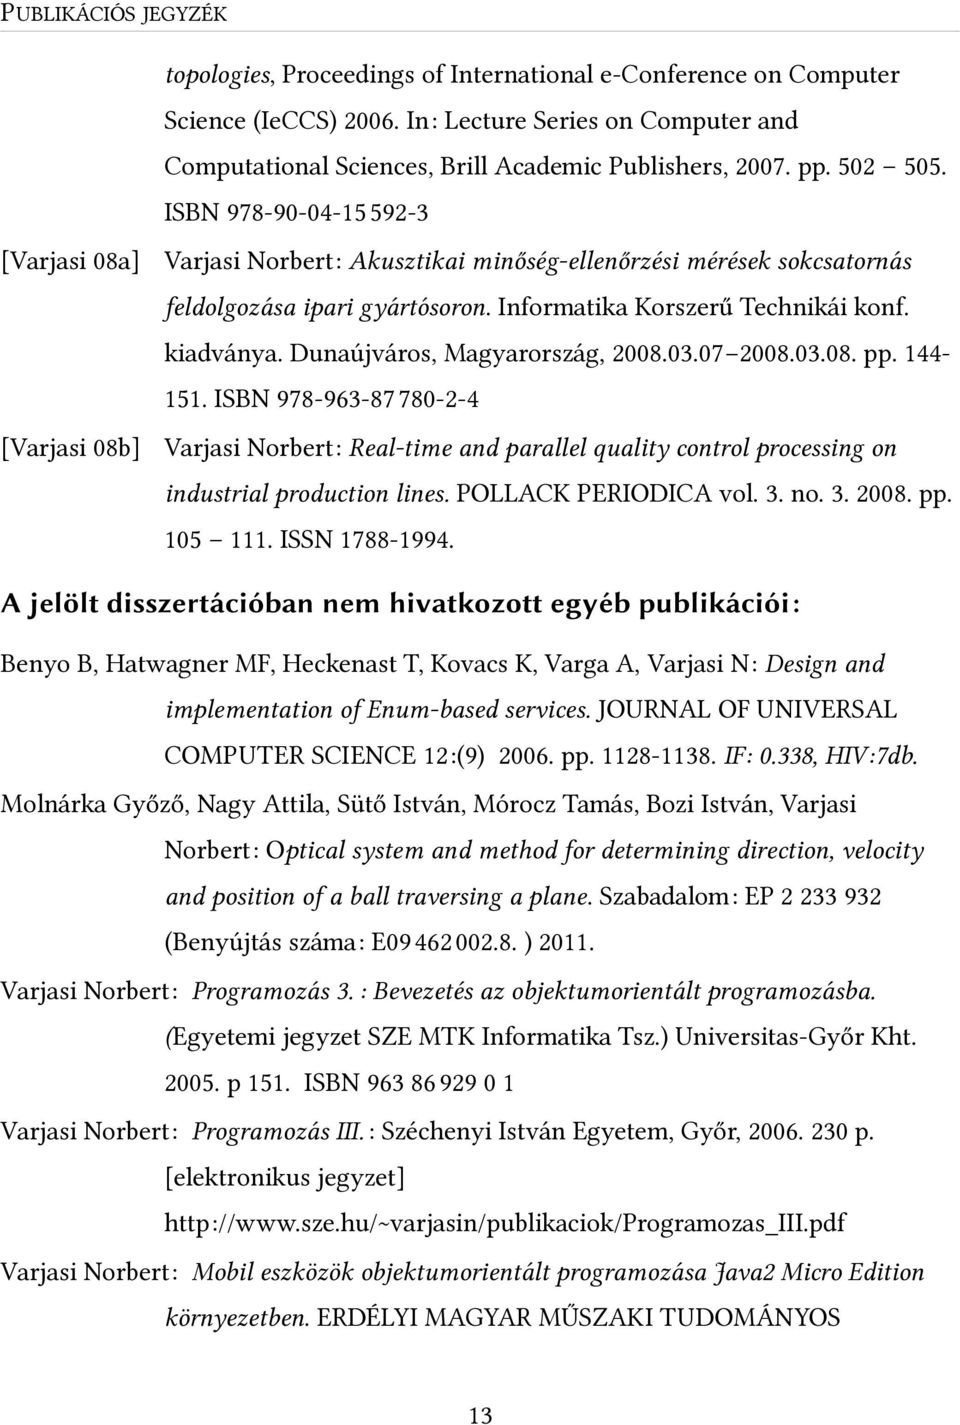 ISBN 978-90-04-150592-3 Varjasi Norbert: Akusztikai minőség-ellenőrzési mérések sokcsatornás feldolgozása ipari gyártósoron. Informatika Korszerű Technikái konf. kiadványa.